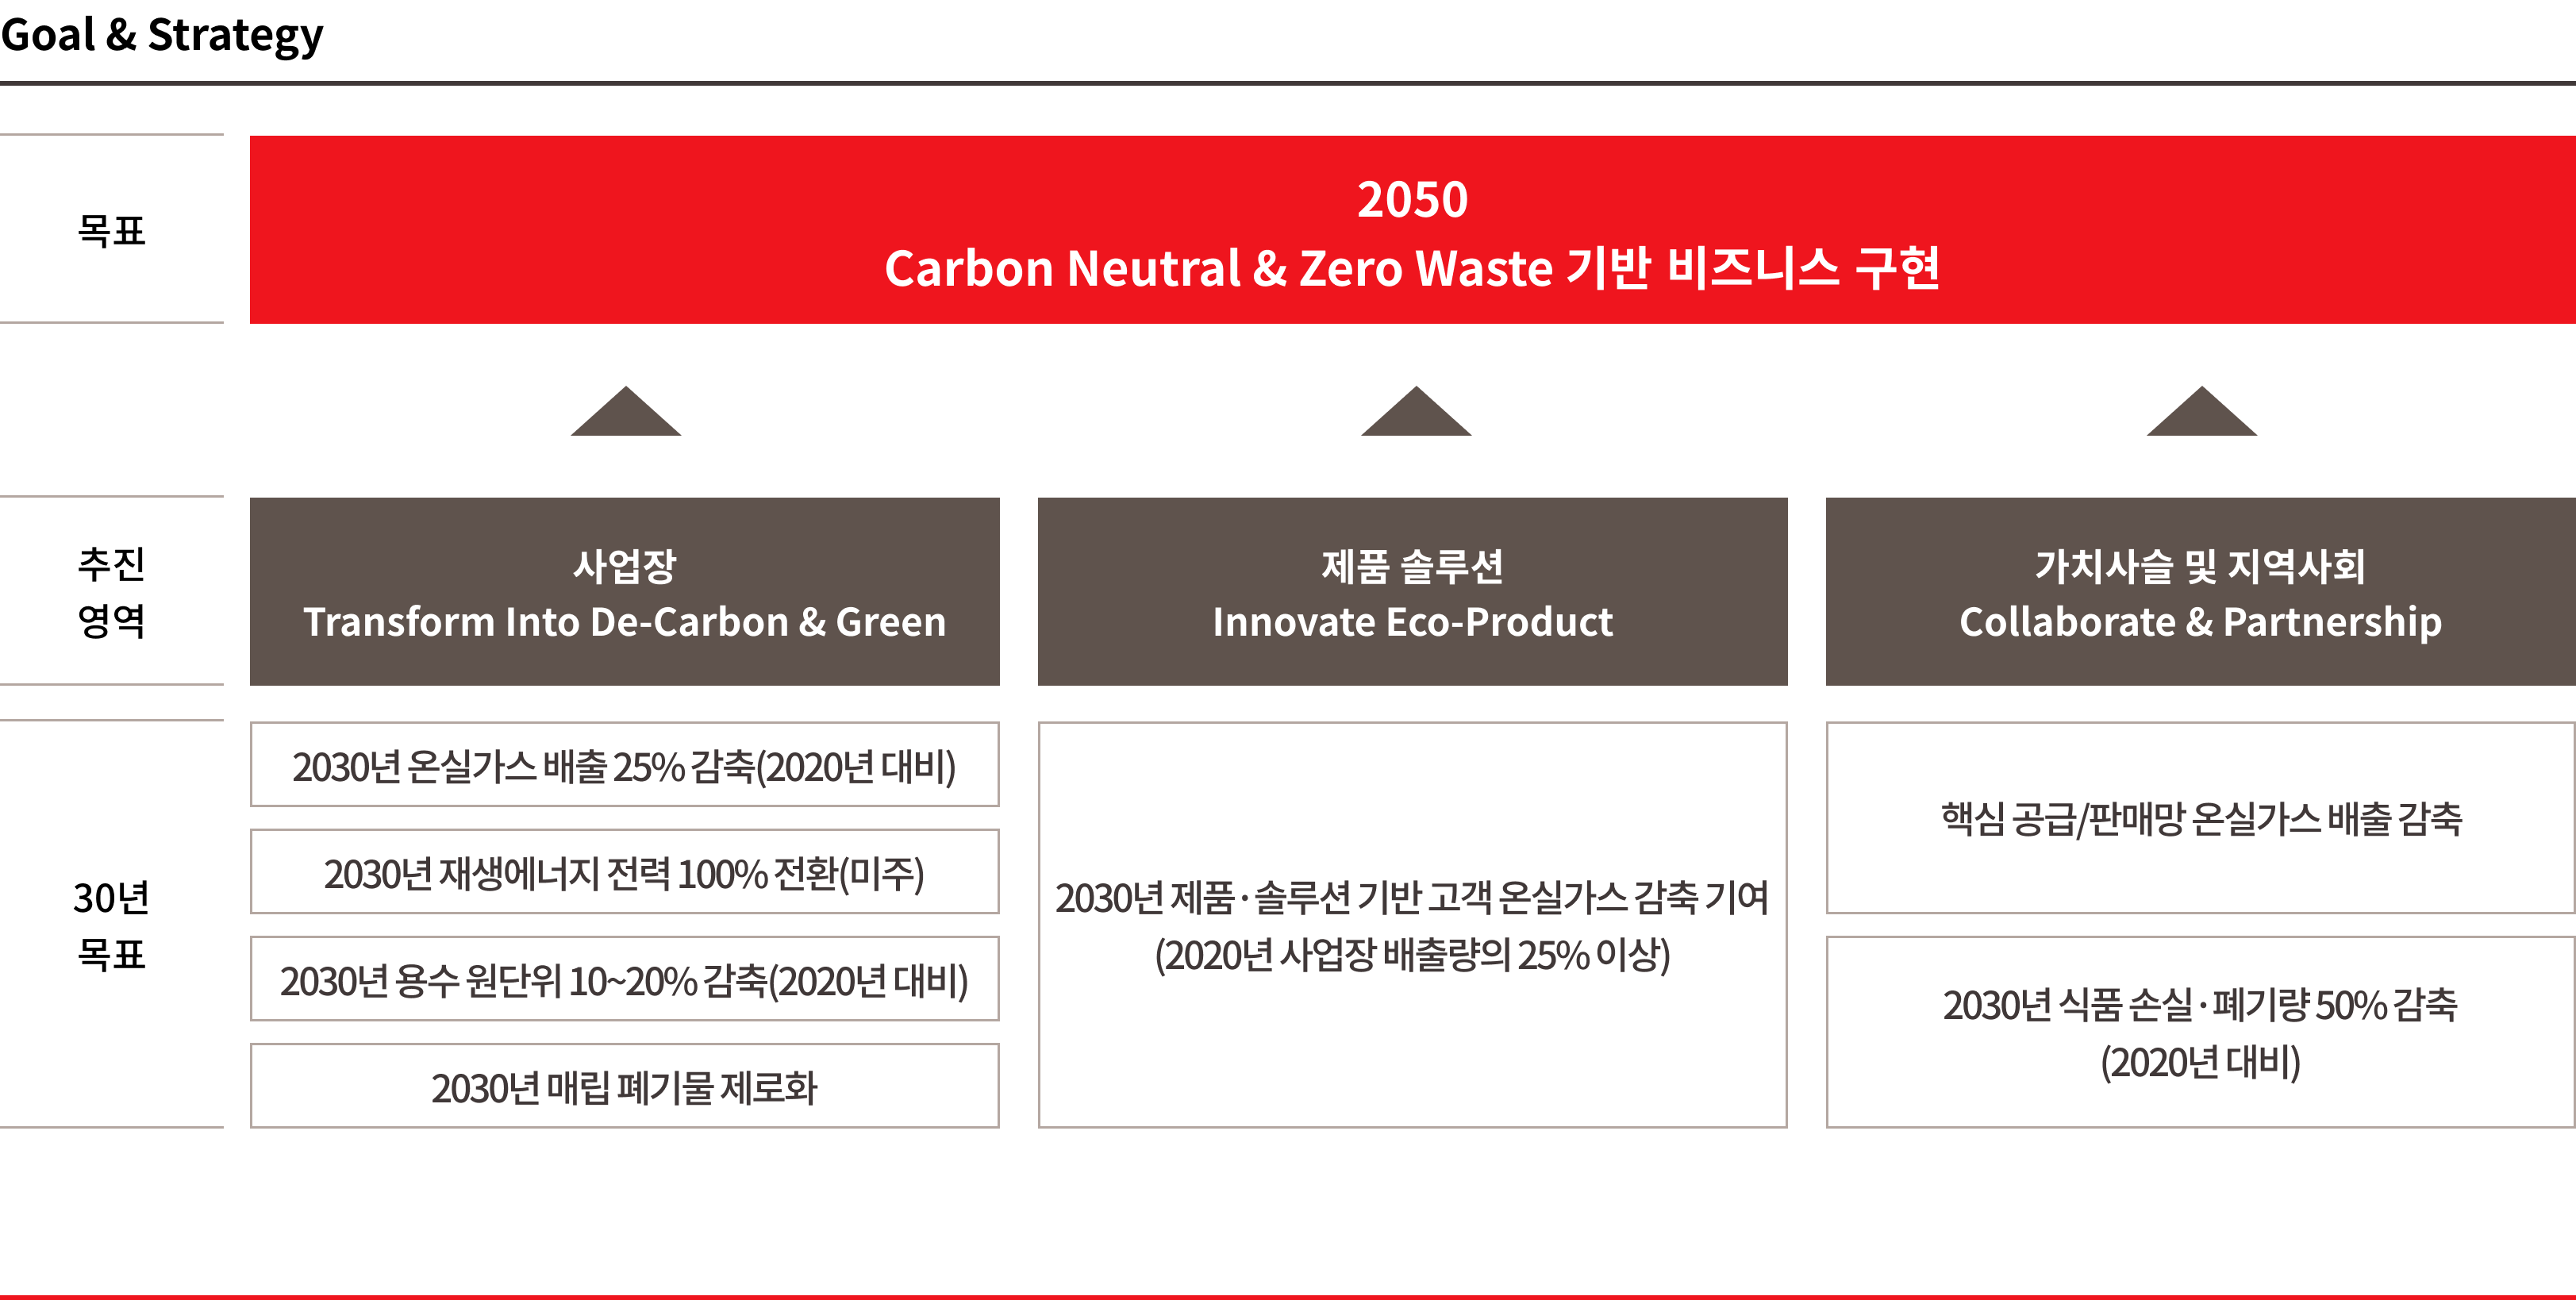 지속가능한 환경의 목표는 2050 Carbon Neutral & Zero Waste 기반 비즈니스 구현이다. 이를 위해 3가지 추진영역을 선정하였으며, 각 영역별 30년 목표는 다음과 같다. 첫번째 추진영역 ‘사업장 Transform Into De-Carbon & Green’에서는 2030년 온실가스 배출 25% 감축(2020년 대비), 2030년 재생에너지 전력 100% 전환(미주), 2030년 용수 원단위 10~20% 감축(2020년 대비), 2030년 매립 폐기물 제로화를 목표로 한다. 두번째 추진영역 ‘제품 솔루션 Innovate Eco-Product‘은 2030년 제품/솔루션 기반 고객 온실가스 감축 기여(2020년 사업장 배출량의 25% 이상)를 목표로, 세번째 추진영역 ‘가치사슬 및 지역사회 Collaborate & Partnership’은 핵심 공급/판매망 온실가스 배출 감축, 2030년 식품 손실/폐기량 50% 감축(2020년 대비)을 목표로 한다.